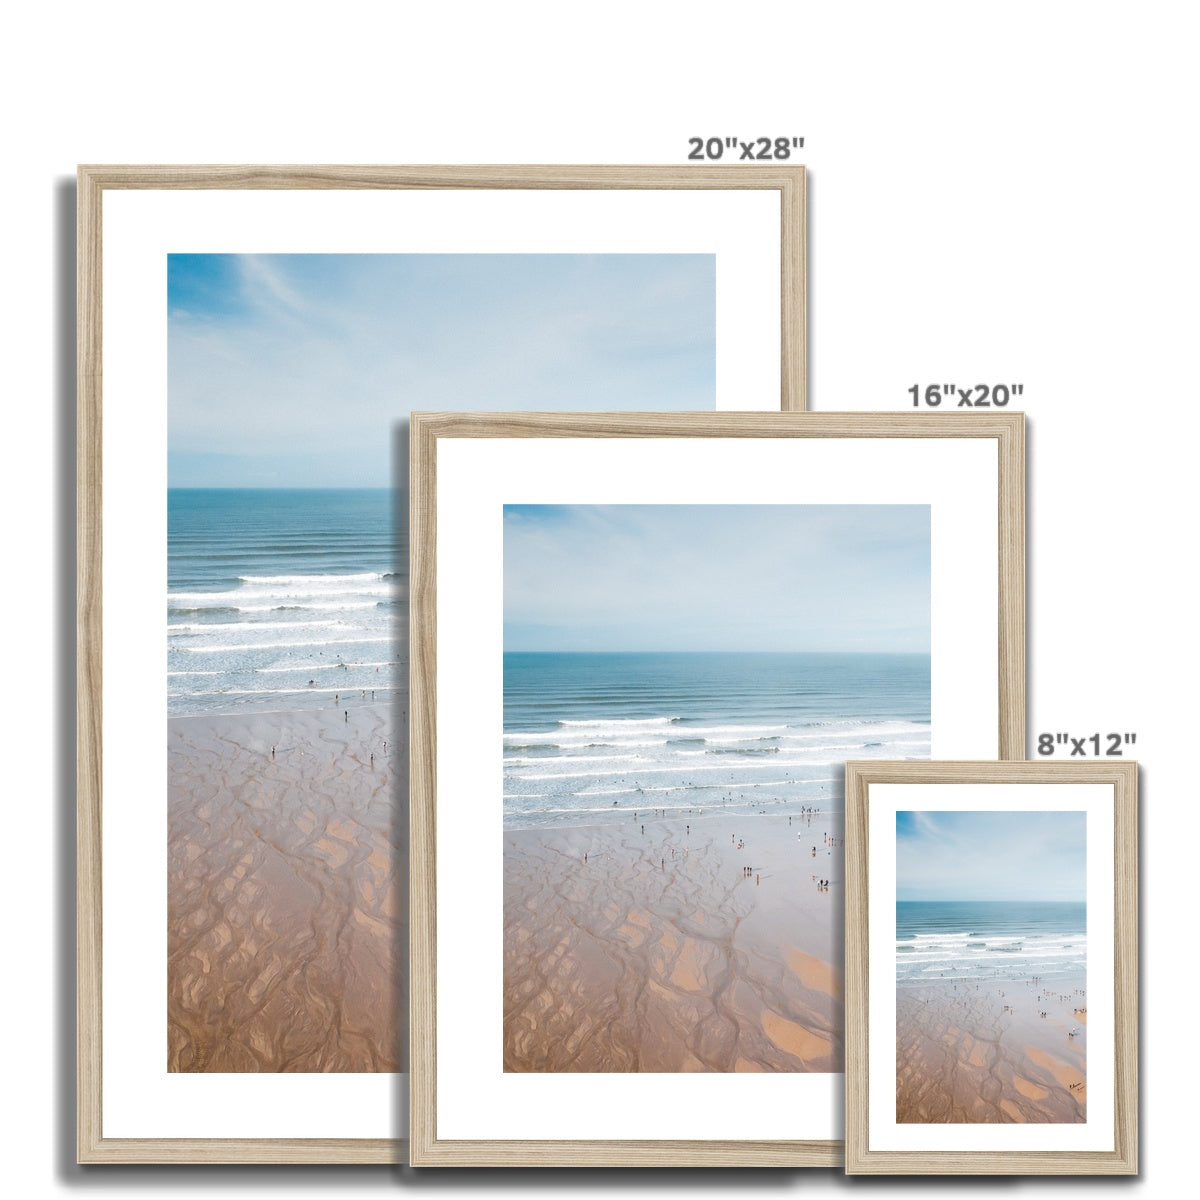 polzeath beach framed photograph